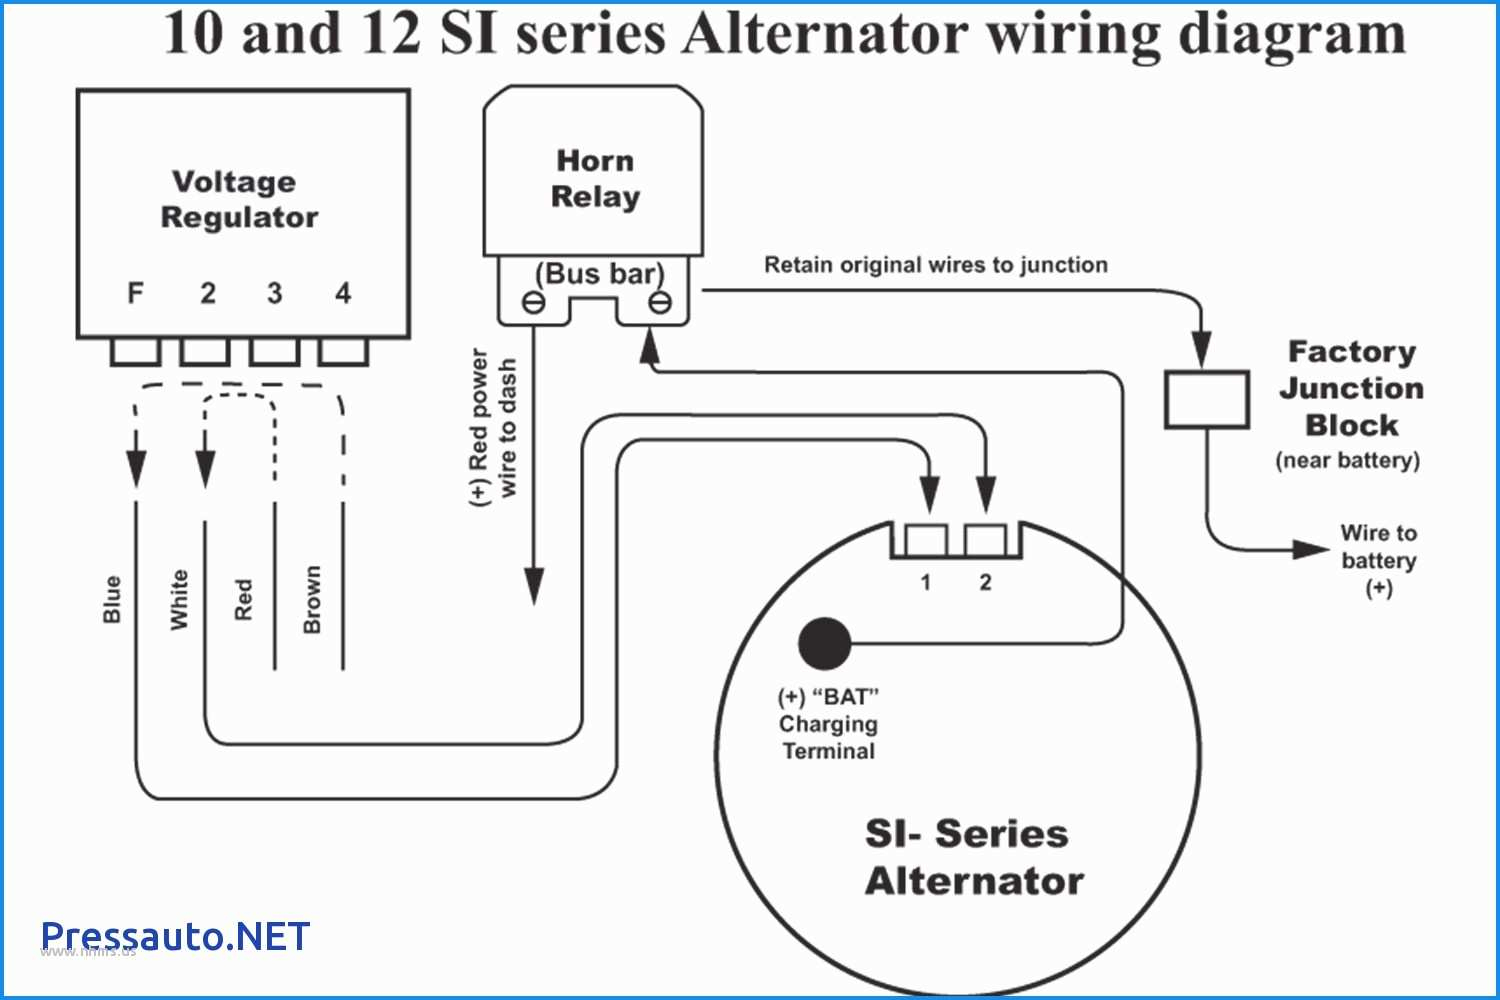 Gm 3 1 Wiring | Wiring Diagram - 4 Wire Alternator Wiring Diagram